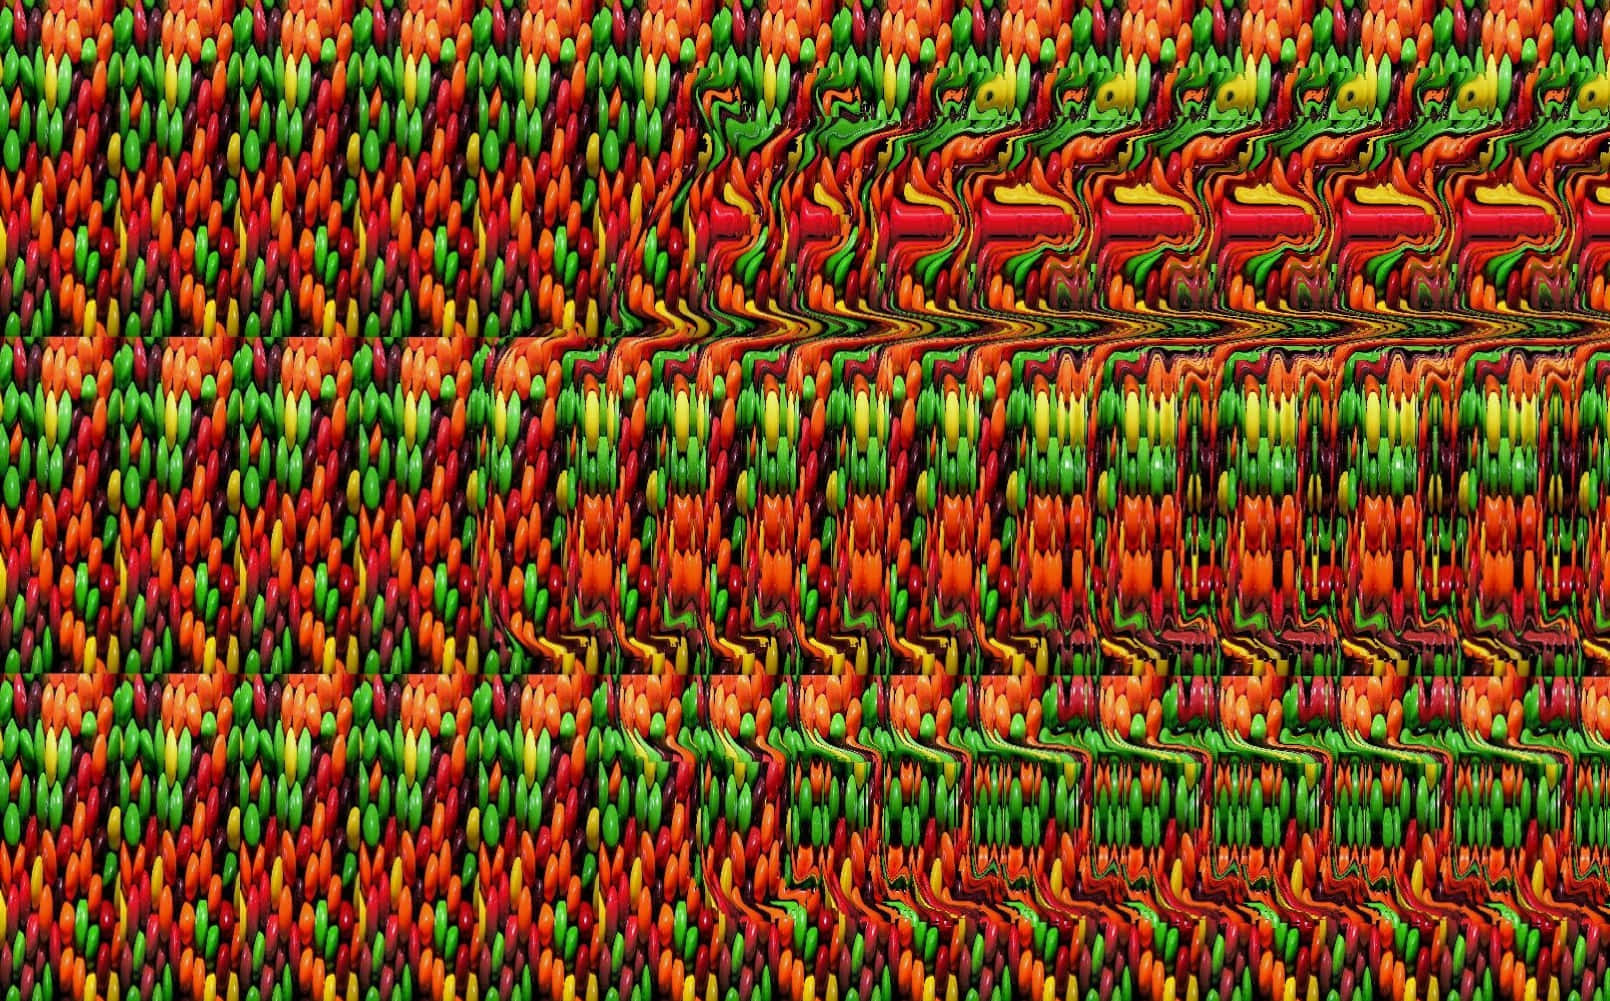 Modelloastratto Di Glitch Pattern Magic Eye 3d Stereogram Immagina Un Pattern Astratto E Colorato Con Tonalità Di Rosso, Verde E Giallo.